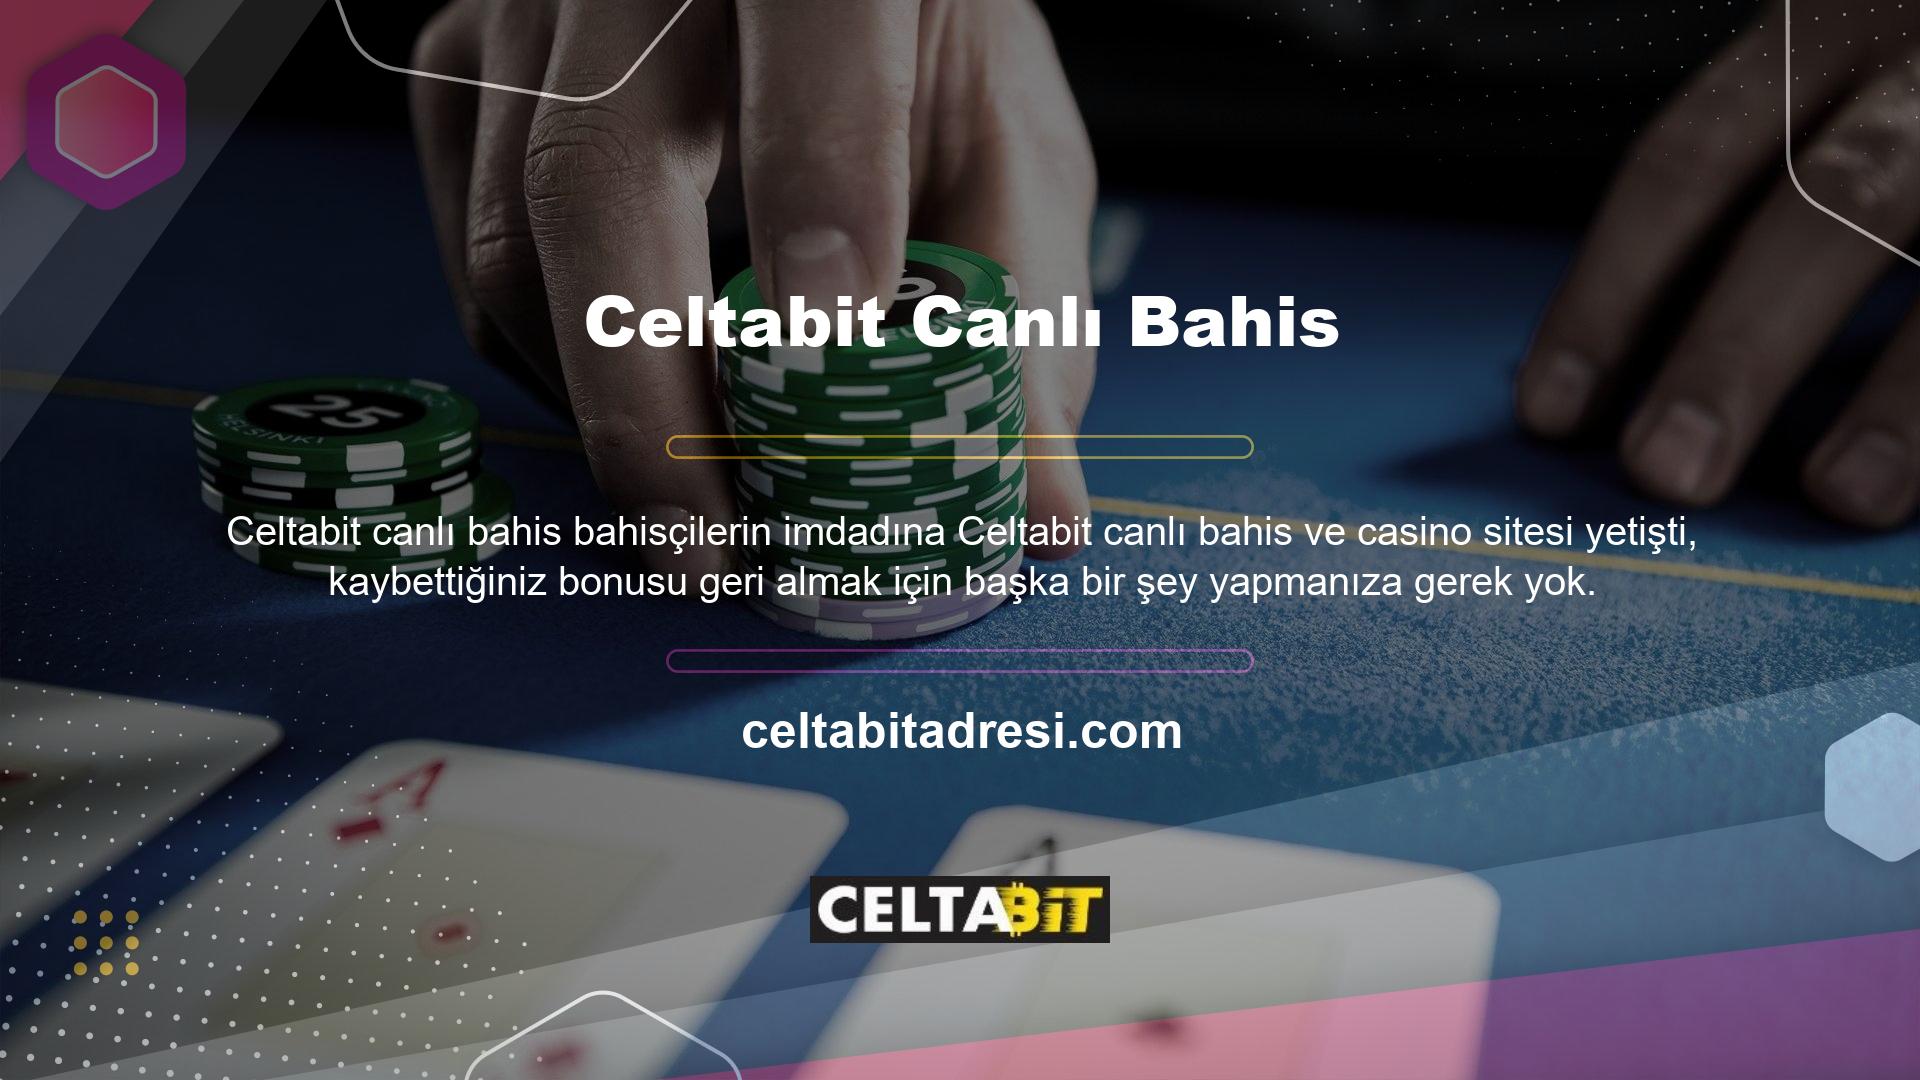 Tek yapmanız gereken Celtabit canlı bahis ve casino sitesine üye olmak